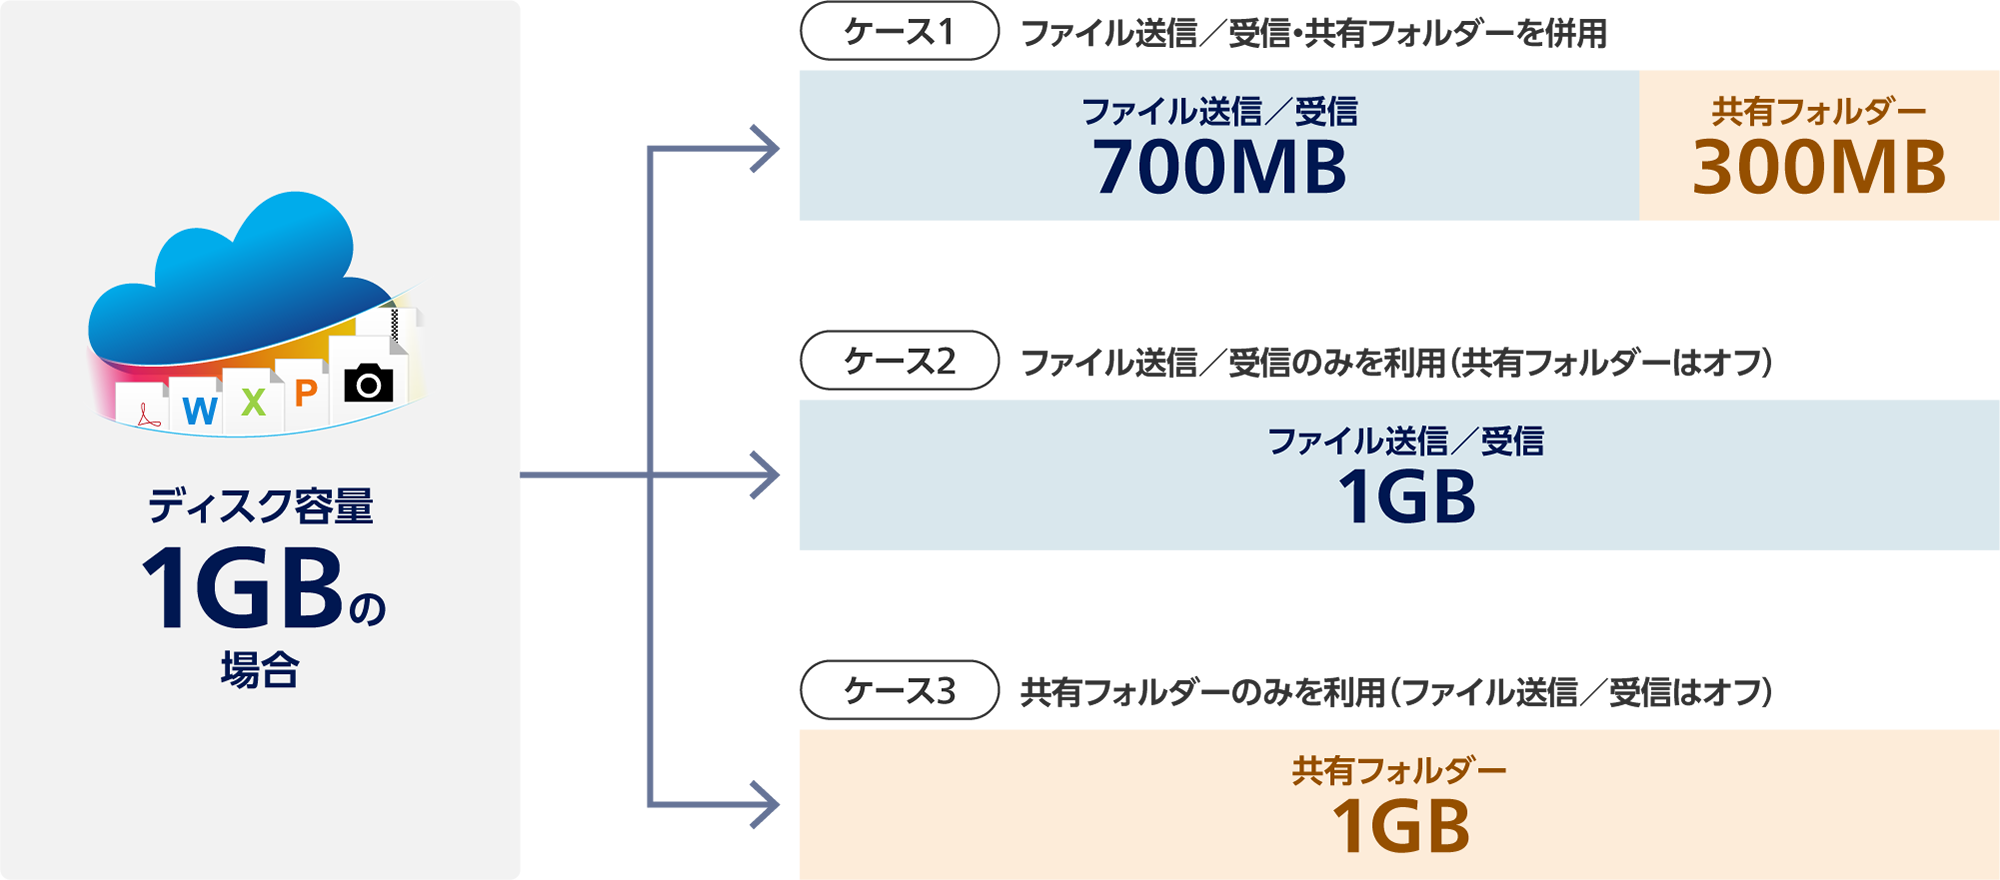 ディスク容量1GBの場合。ケース1 ファイル送信／受信・共有フォルダーを併用：ファイル送信／受信700MB、共有フォルダー300MB。ケース2 ファイル送信／受信のみを利用（共有フォルダーはオフ）：ファイル送信／受信1GB。ケース3 共有フォルダーのみを利用（ファイル送信／受信はオフ）：共有フォルダー1GB。